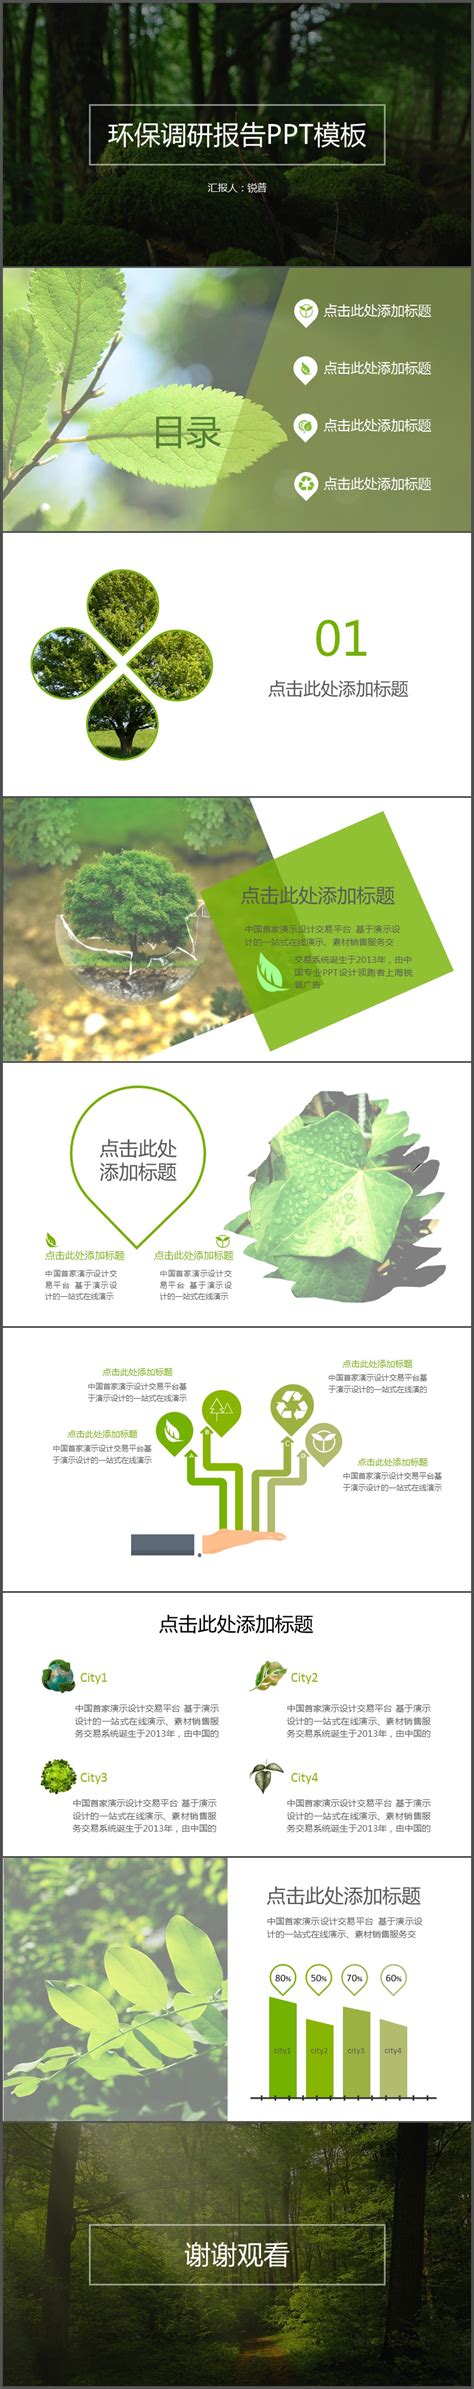 上海仁渡发布2017年ICC海滩及海洋垃圾数据报告 —— 环保公益学习平台-绿资酷